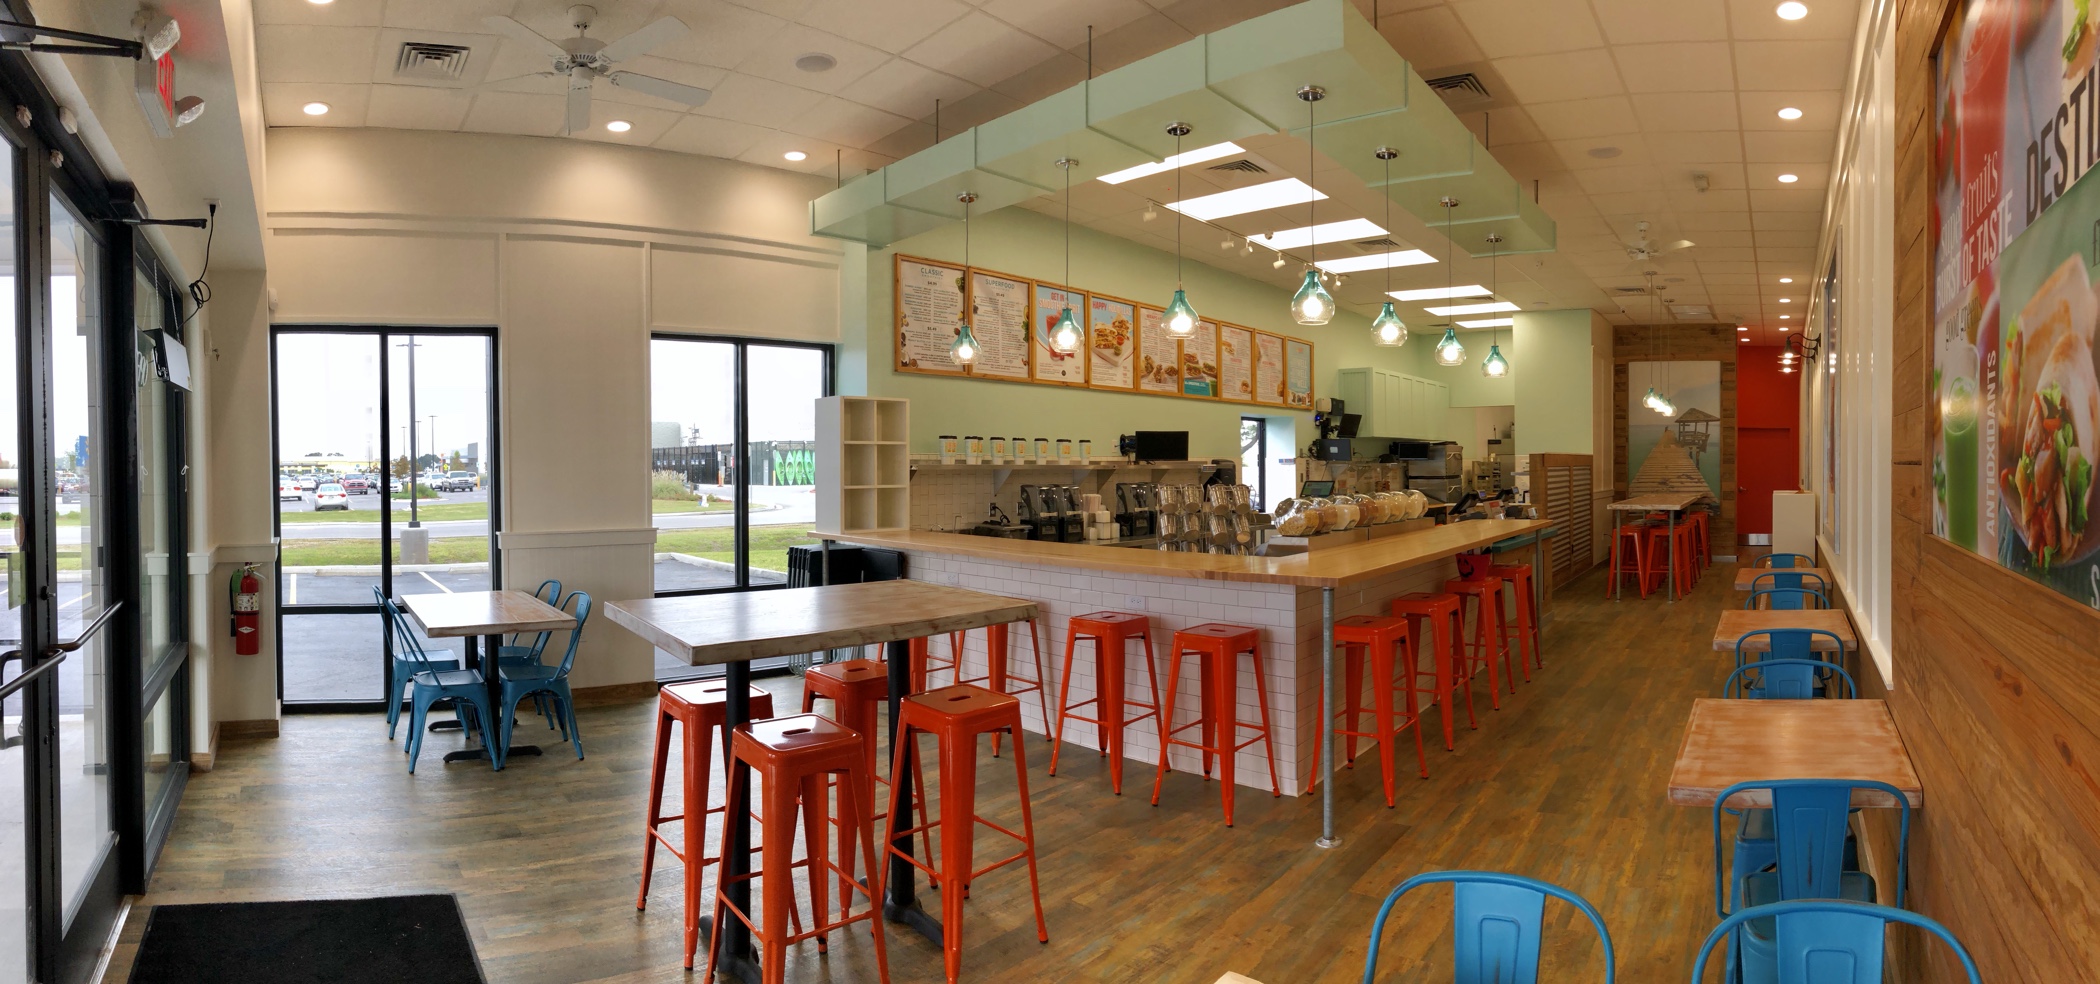 Tropical Smoothie Café In Carencro Opens Monday ...